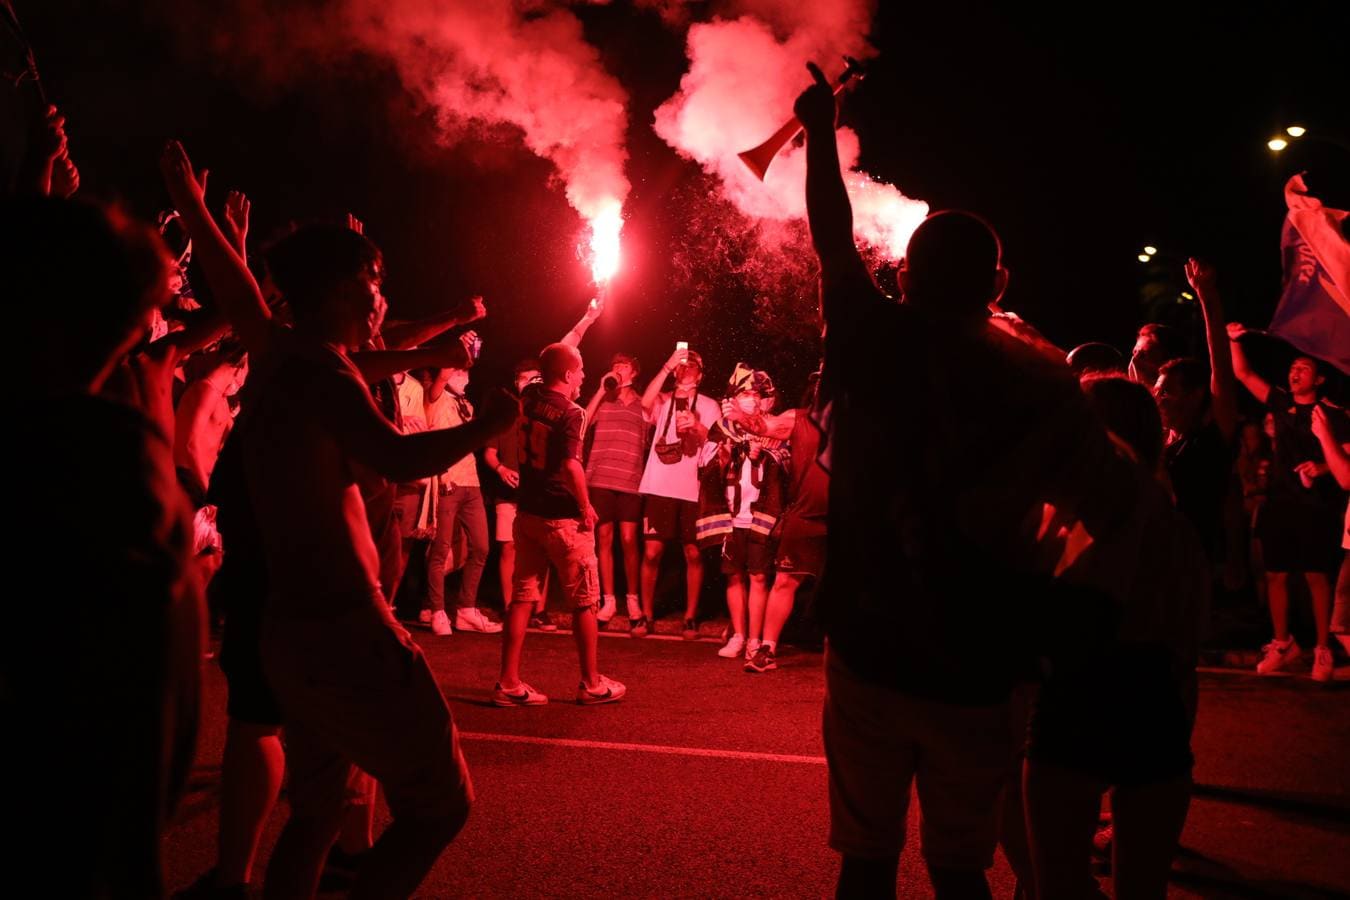 FOTOS: Cádiz celebra el ansiado ascenso de su equipo a la Primera División